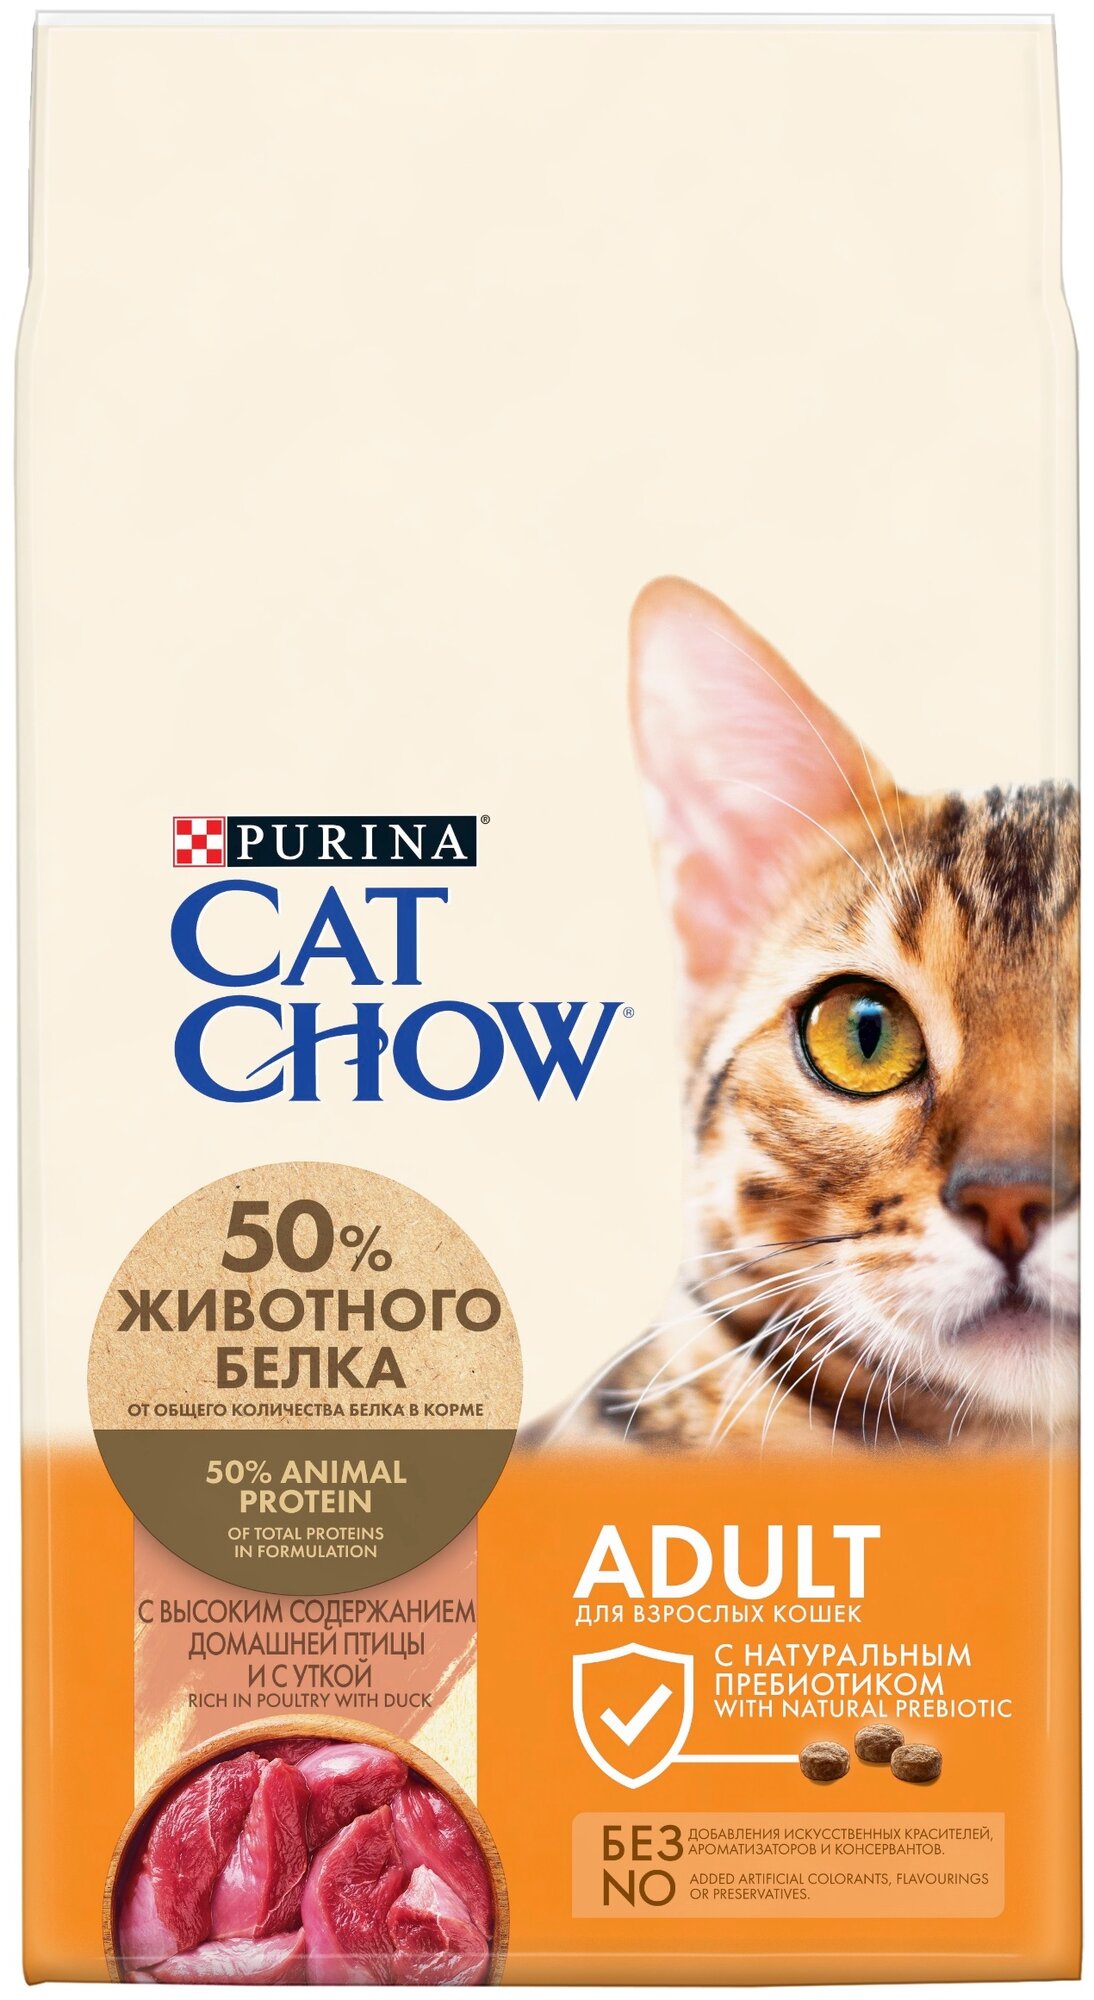     CAT CHOW         7 